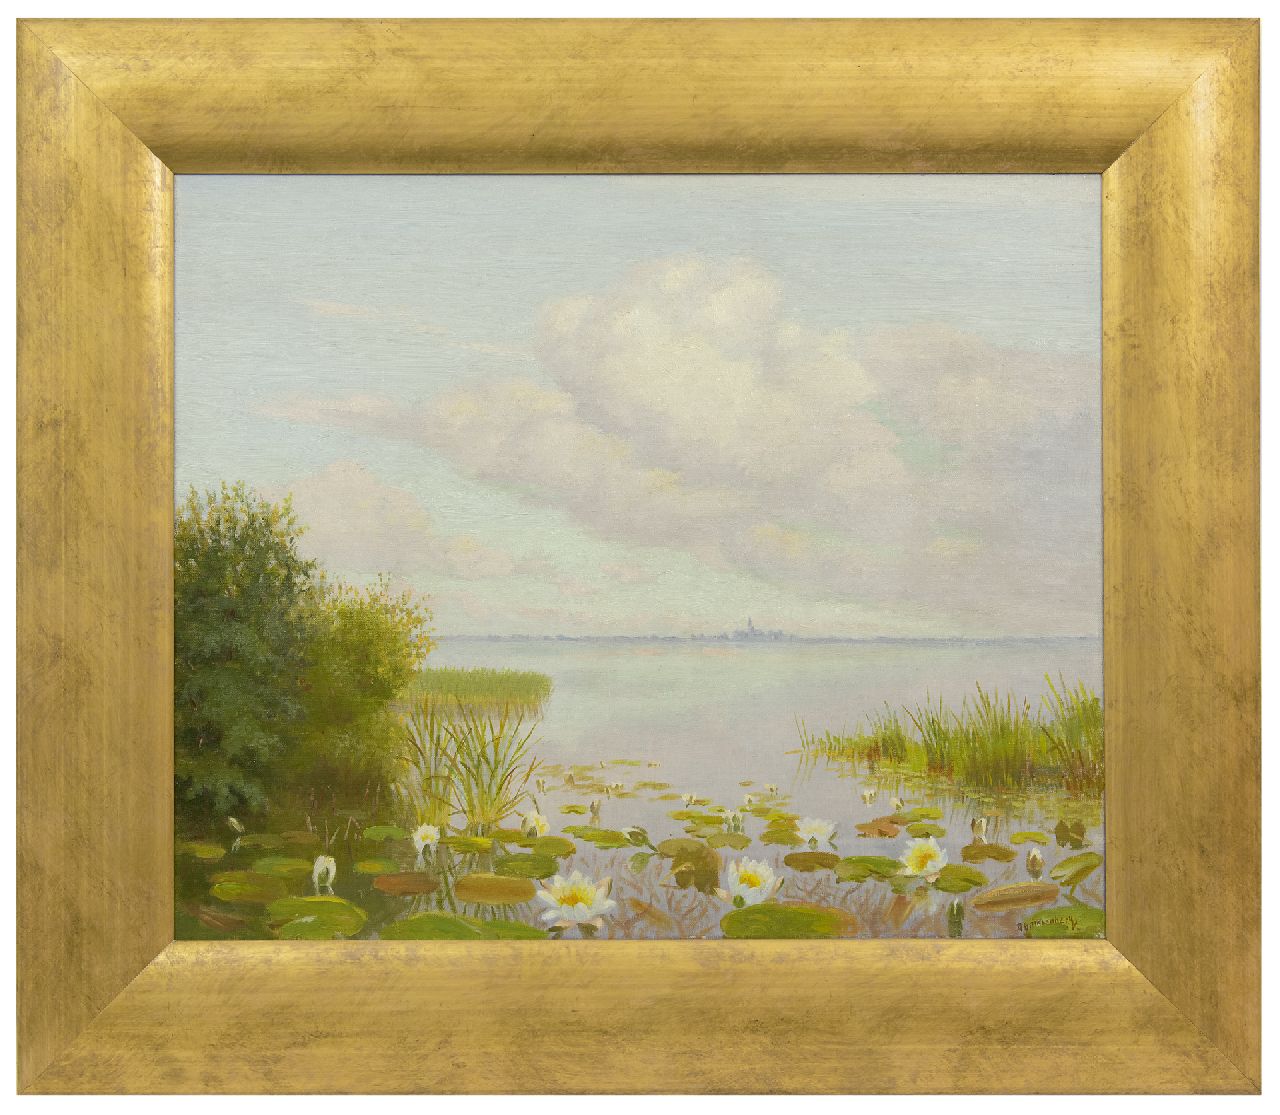 Smorenberg D.  | Dirk Smorenberg | Schilderijen te koop aangeboden | Waterlelies in de Loosdrechtse Plassen, olieverf op doek 49,5 x 60,3 cm, gesigneerd rechtsonder